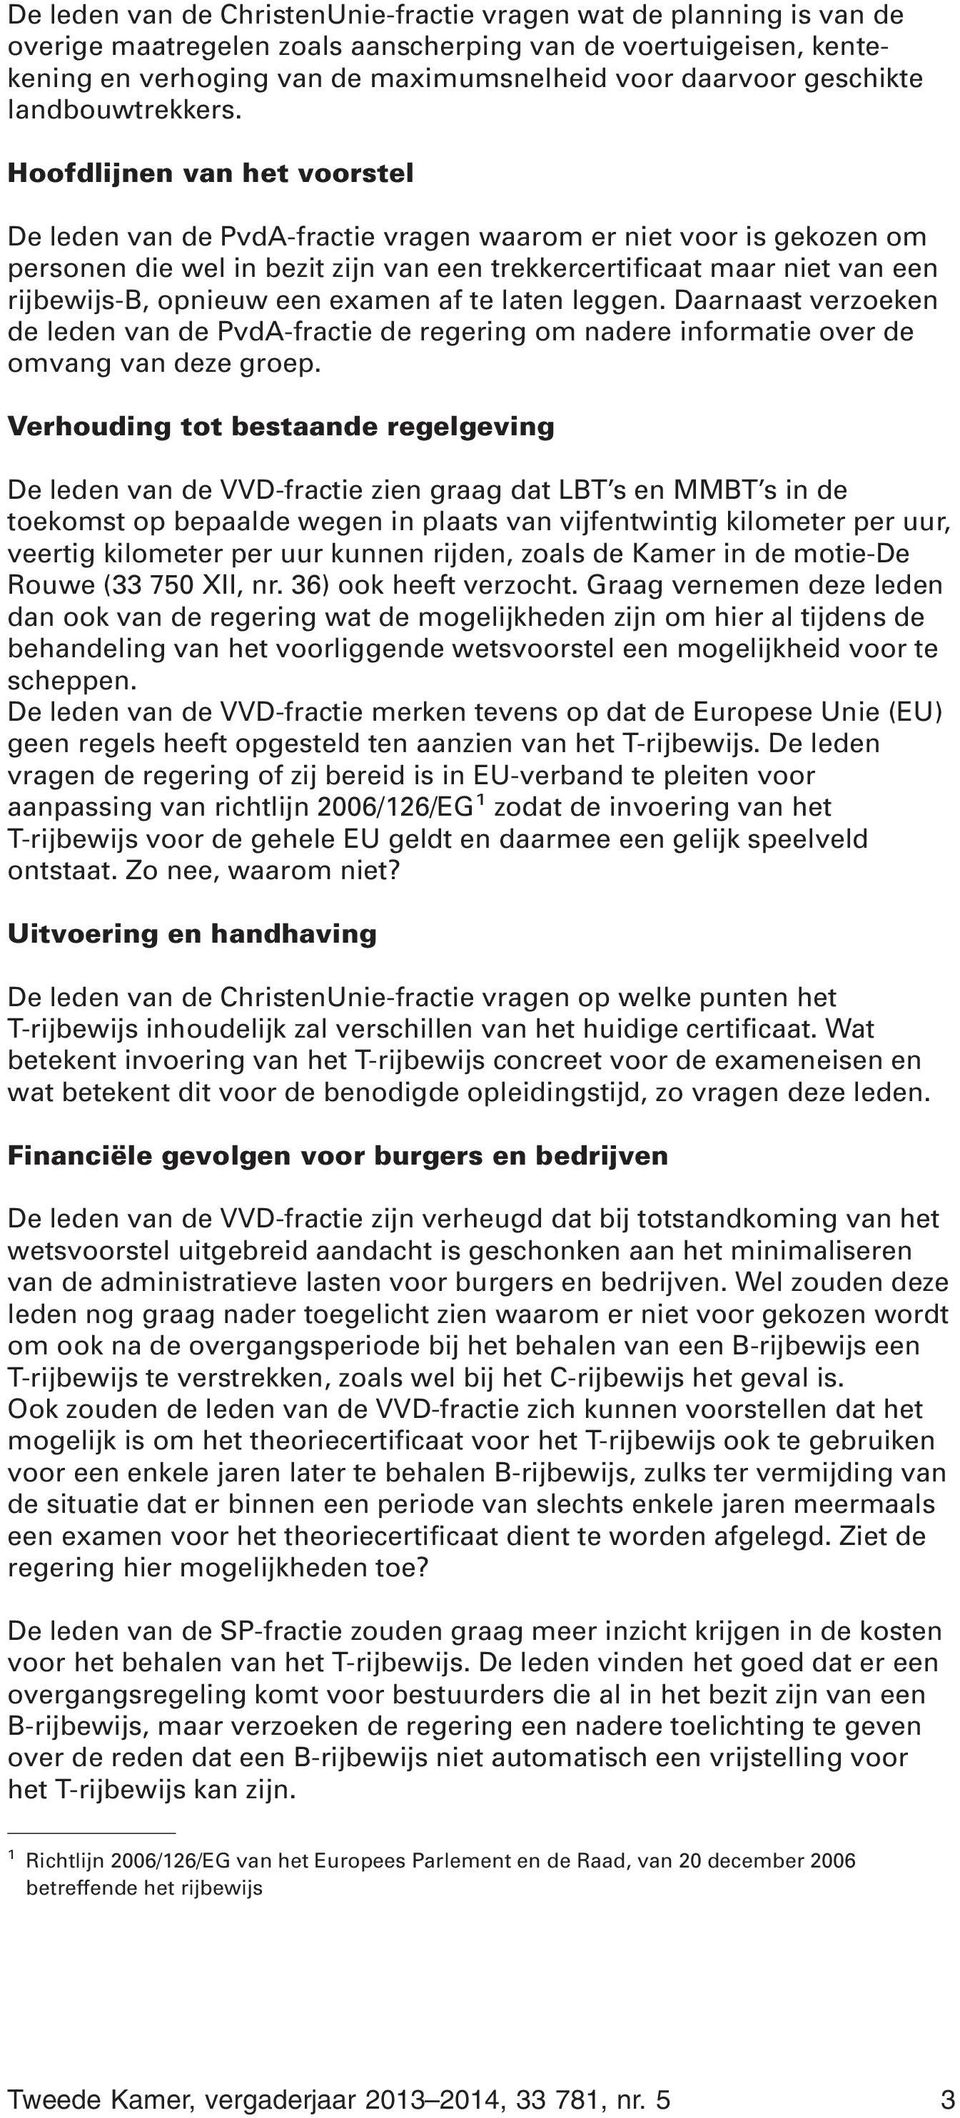 Hoofdlijnen van het voorstel De leden van de PvdA-fractie vragen waarom er niet voor is gekozen om personen die wel in bezit zijn van een trekkercertificaat maar niet van een rijbewijs-b, opnieuw een